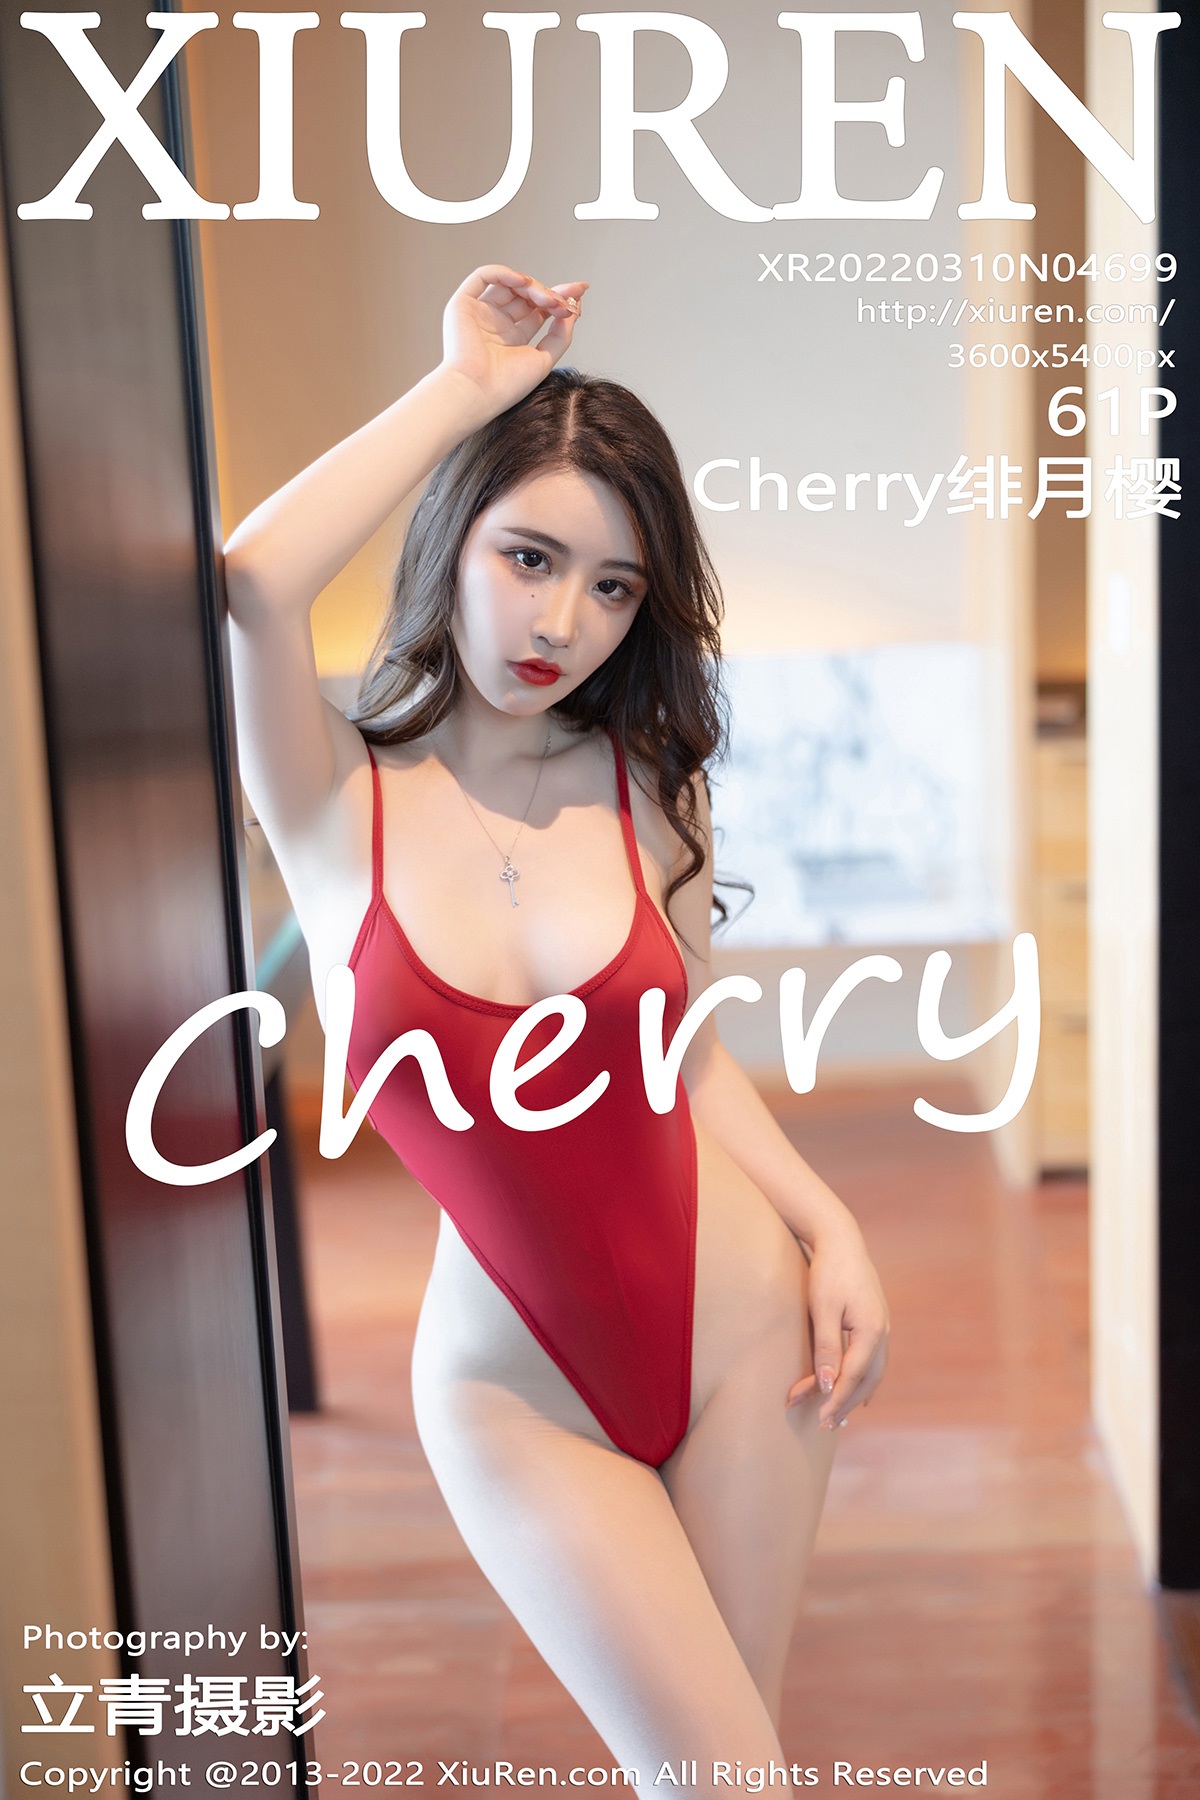 [XiuRen秀人网] No.4699 Cherry绯月樱